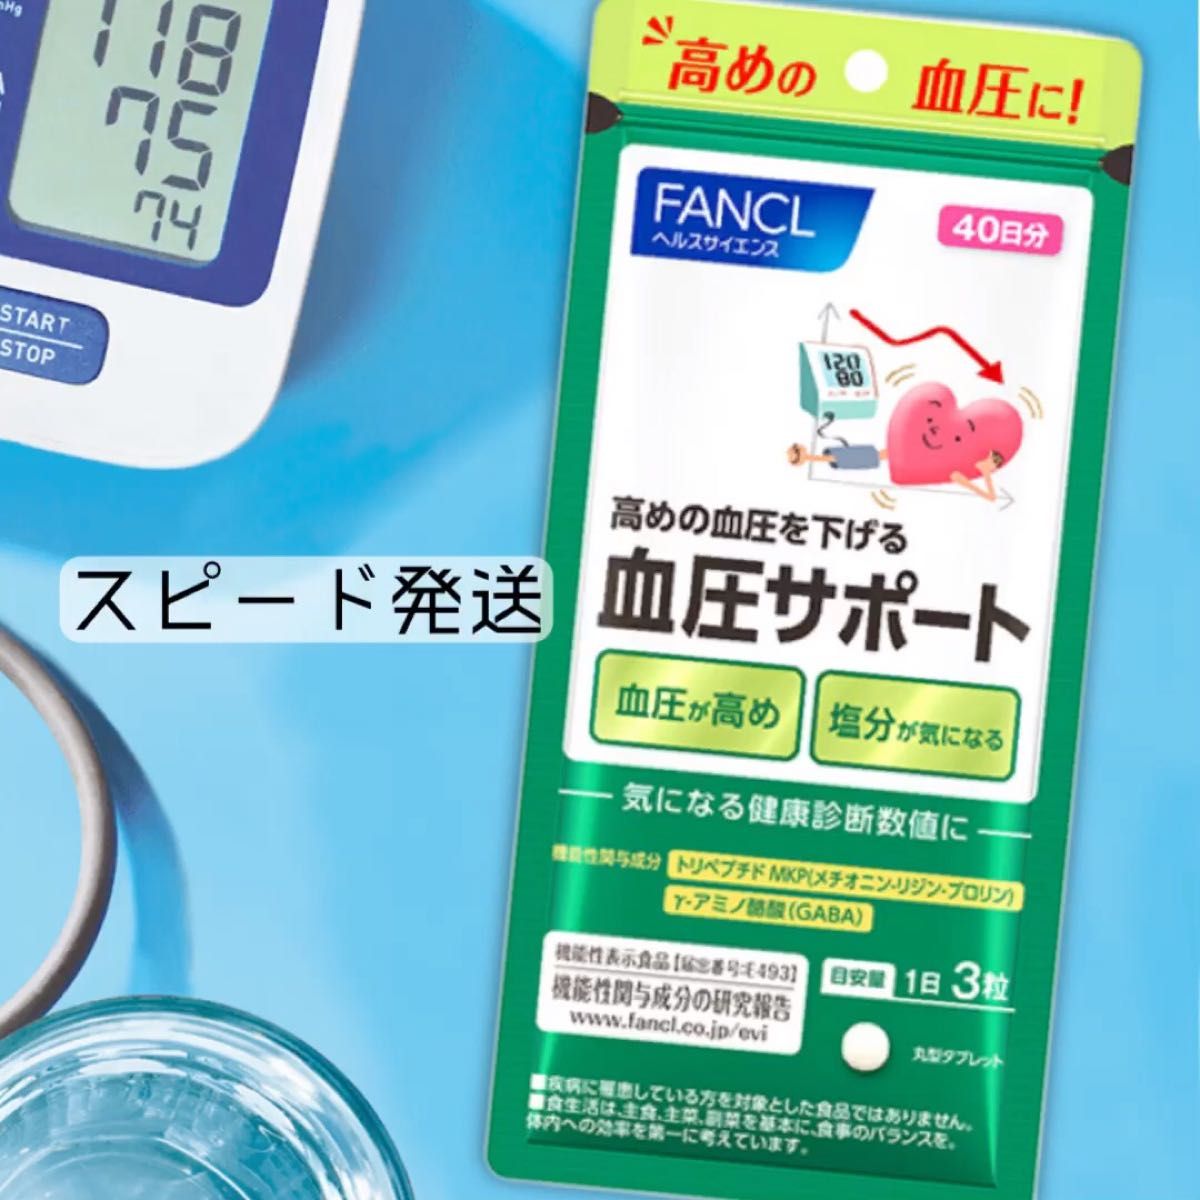 ■ ファンケル 血圧サポート 40日分 120粒 機能性表示食品 サプリメント FANCL 機能性表示食品 ファンケル